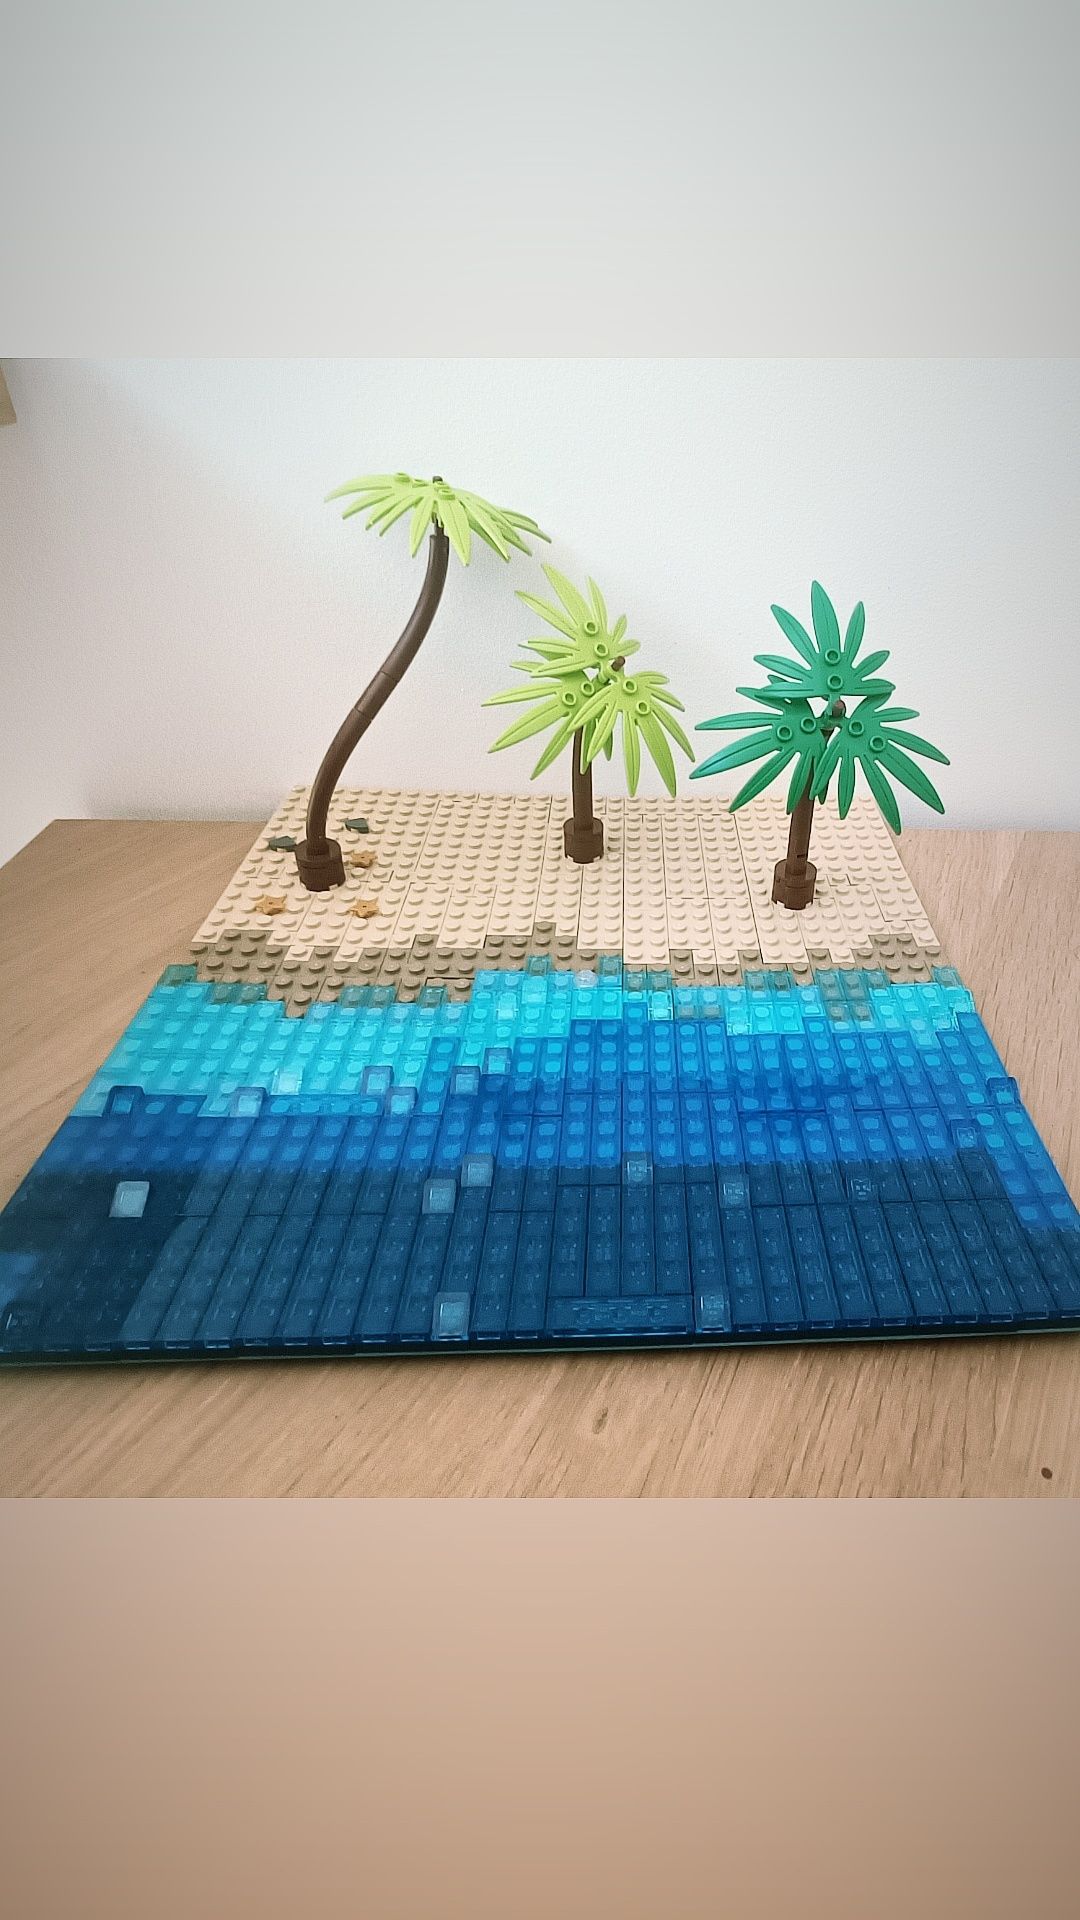 LEGO plaża - klocki+ palmy